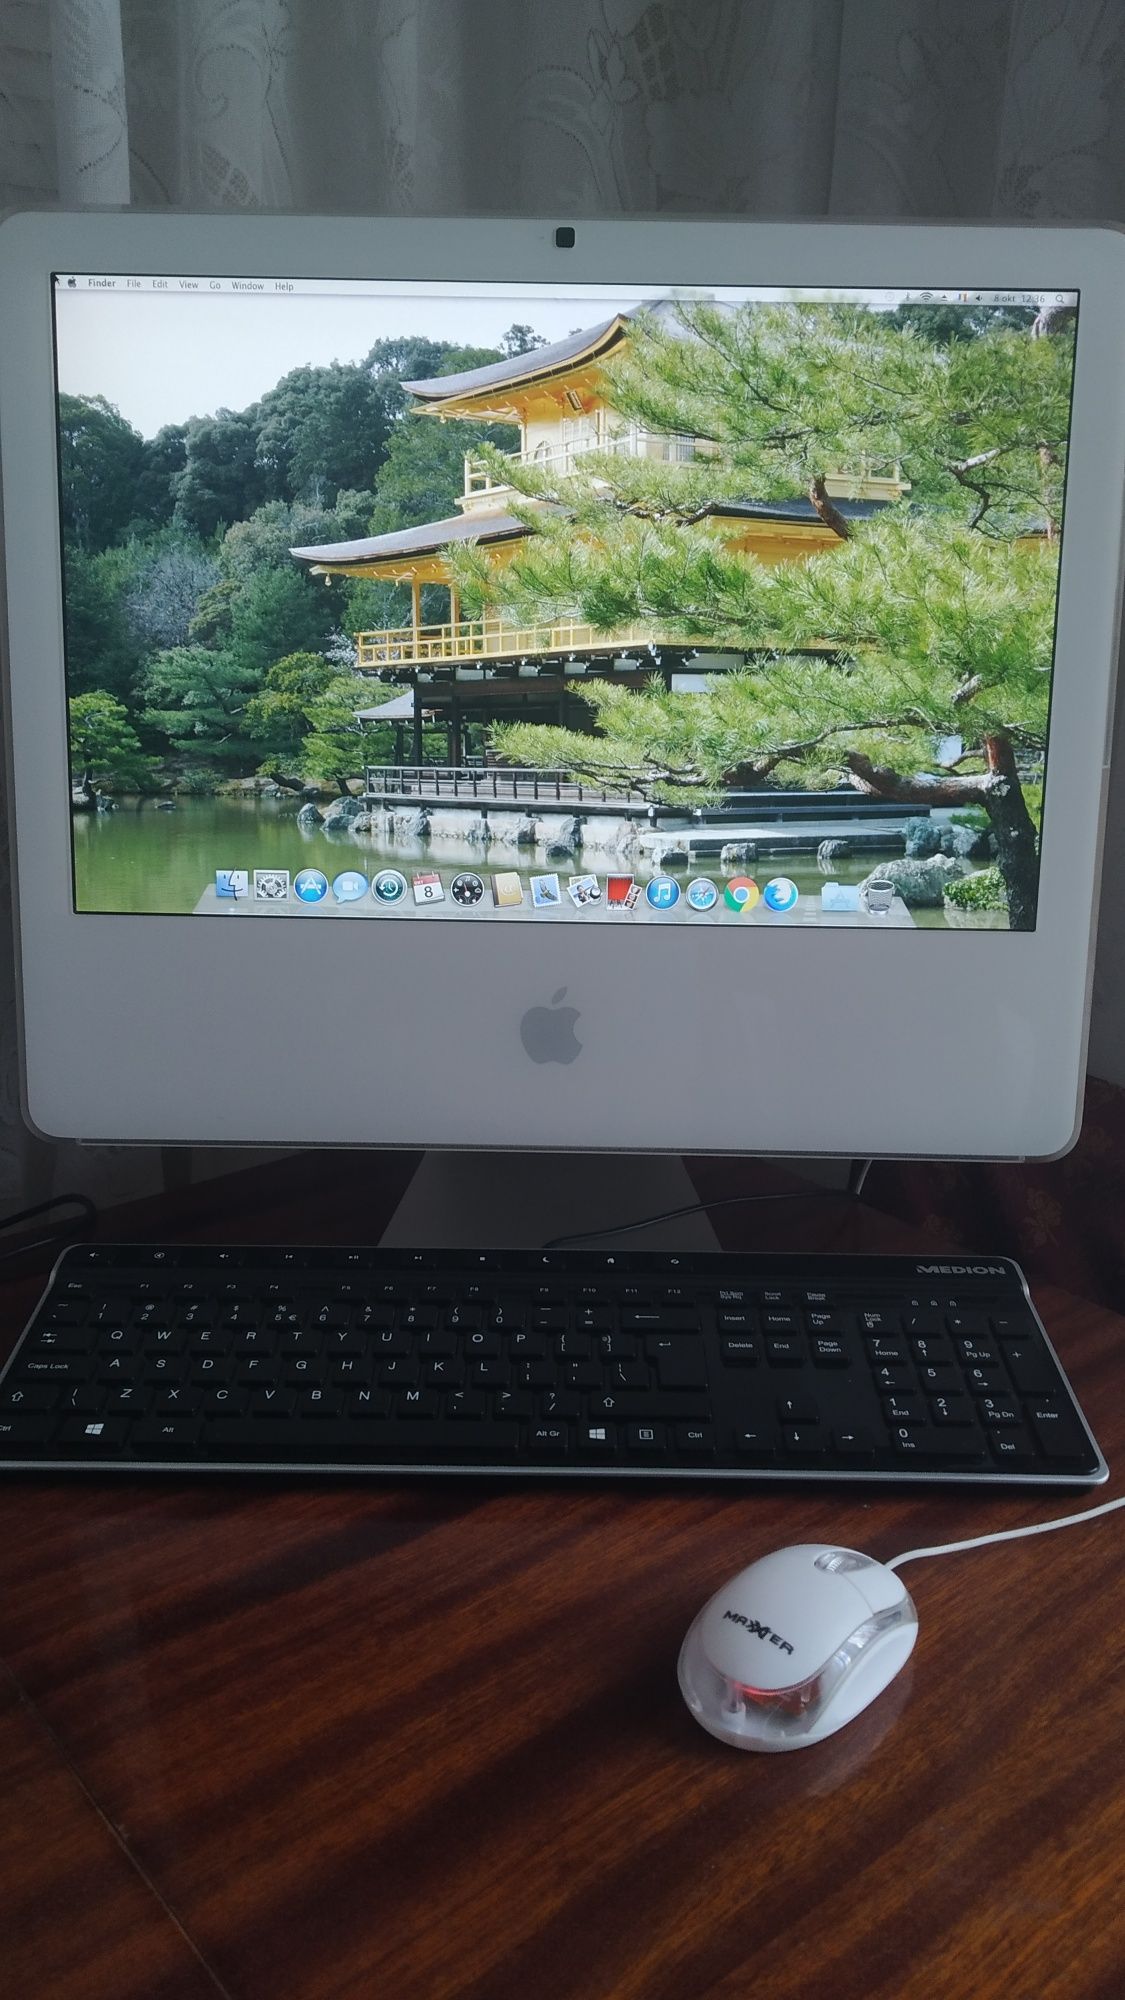 Vând  iMac  5 .1